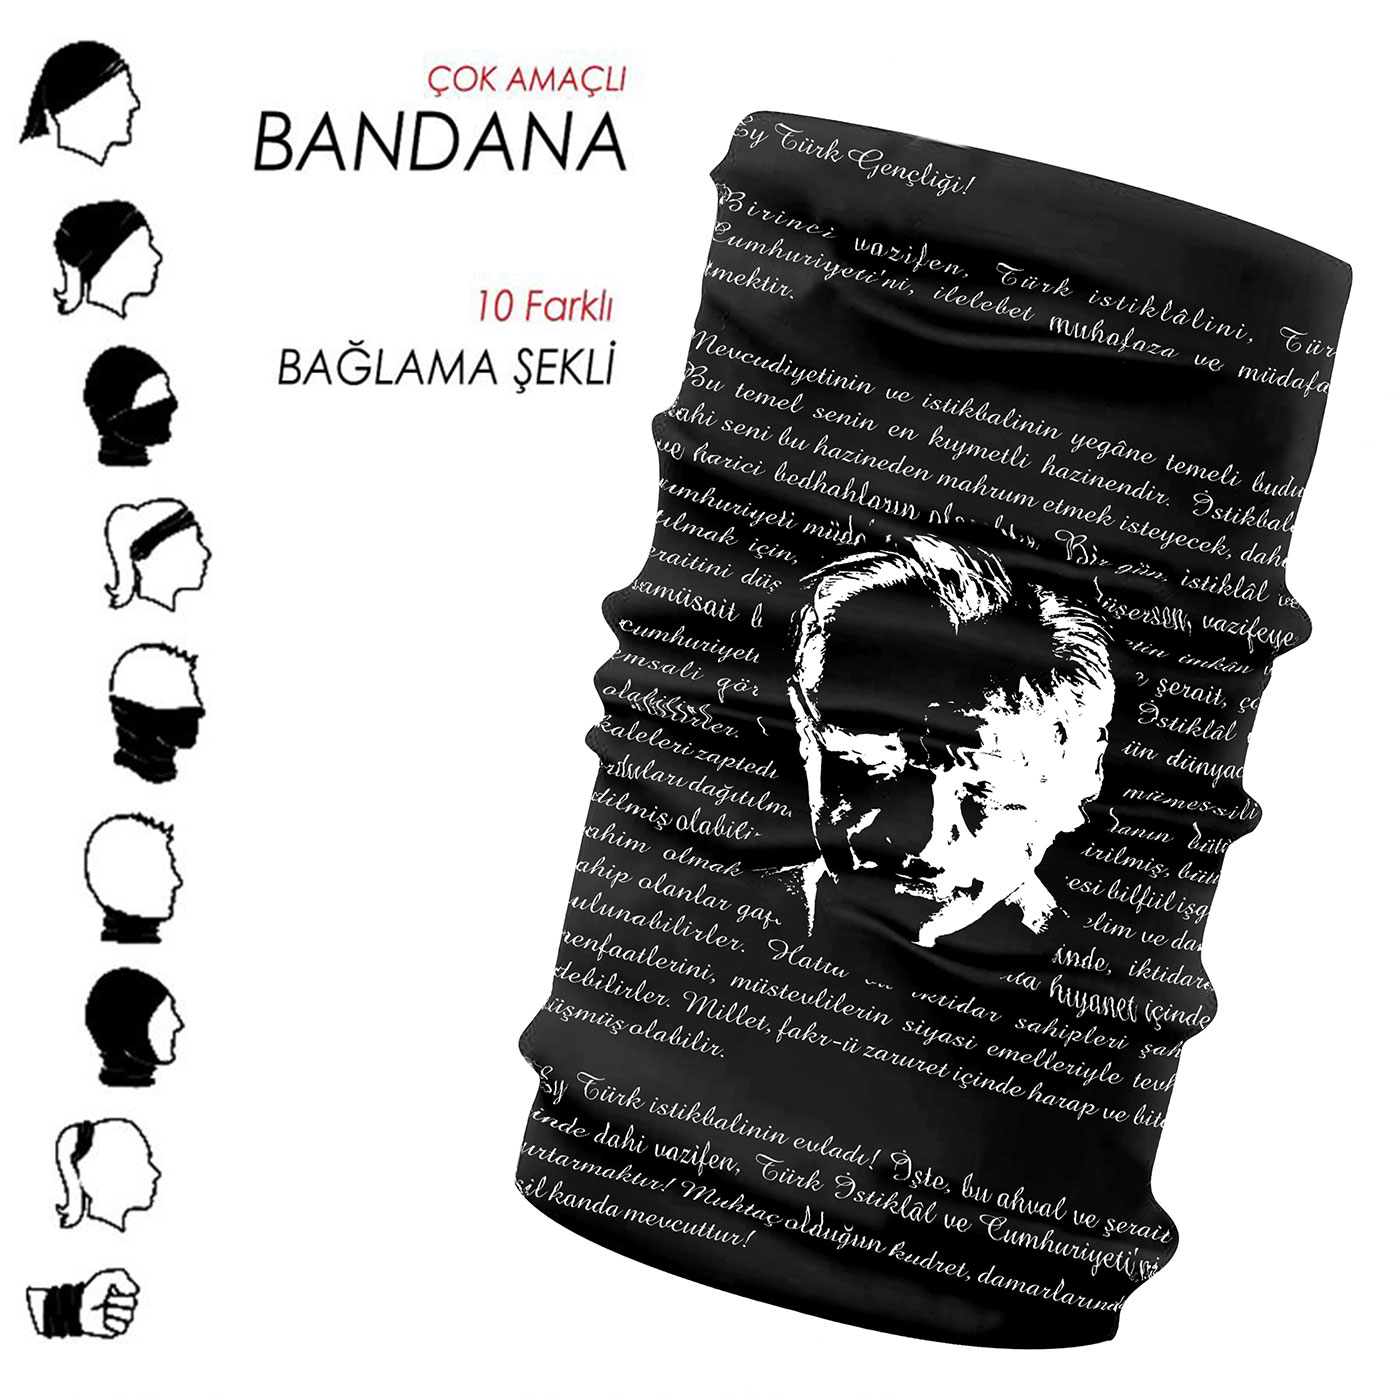 Bandana - 01